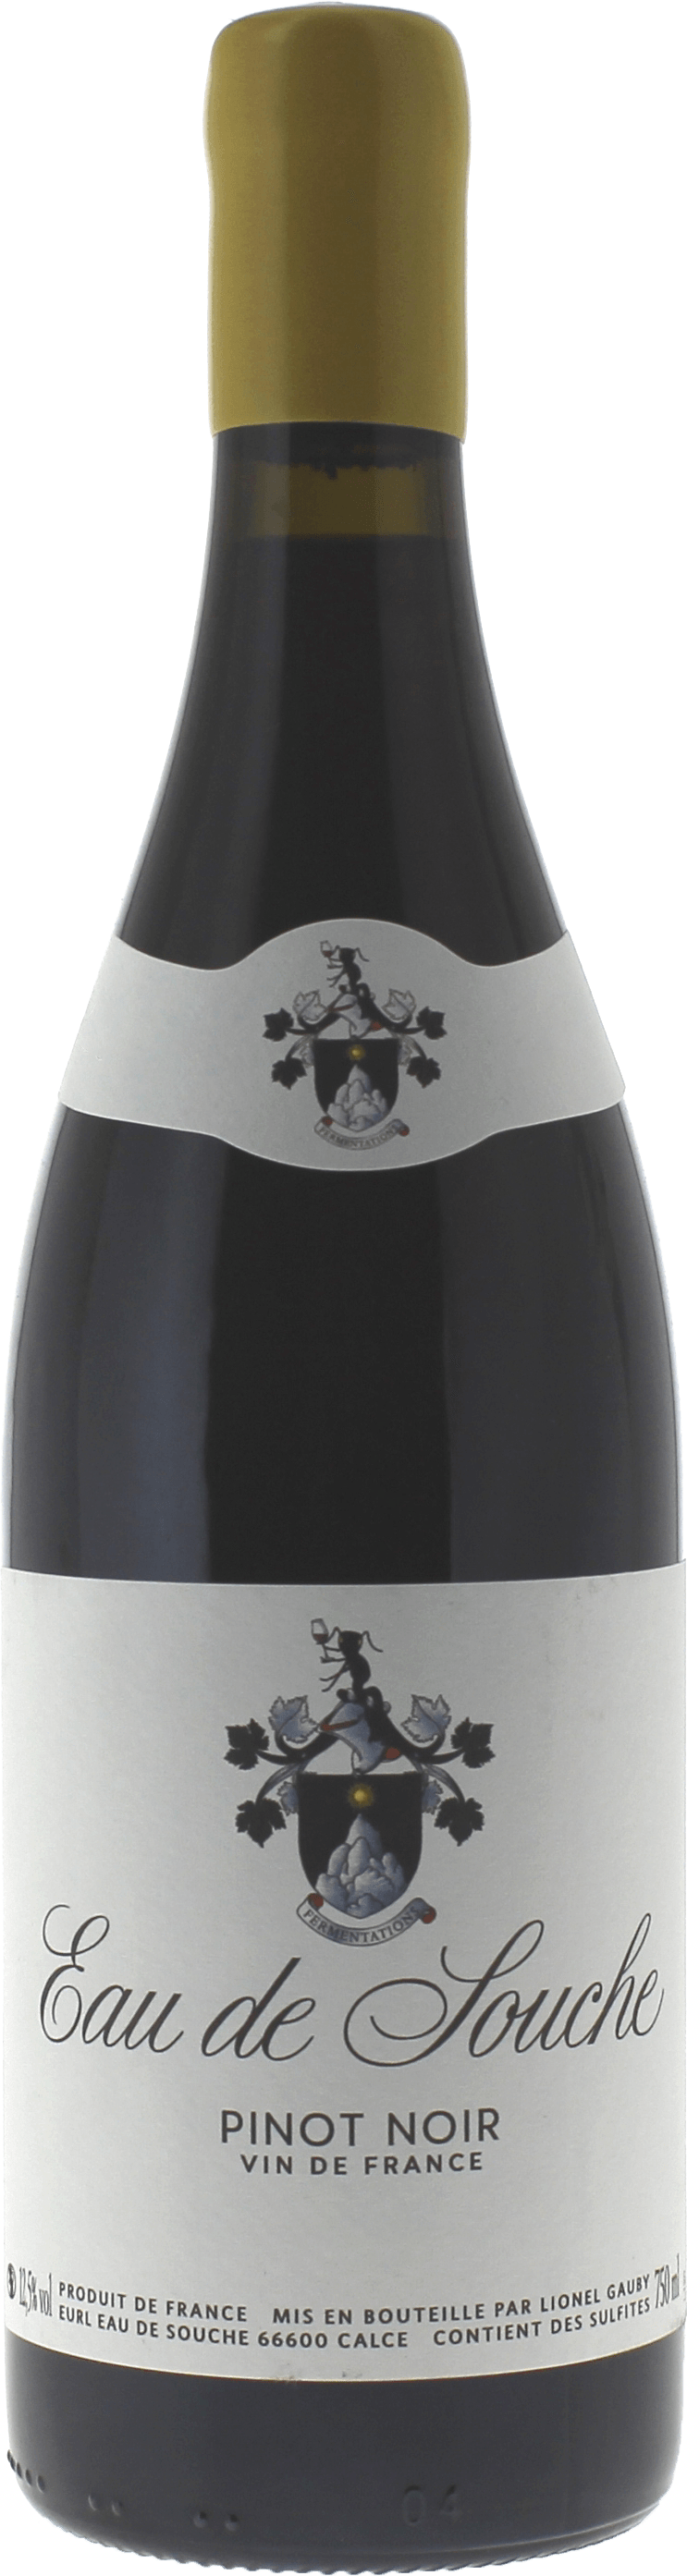 Eau de souche pinot noir lionel gauby 2020  Vin de France, Languedoc